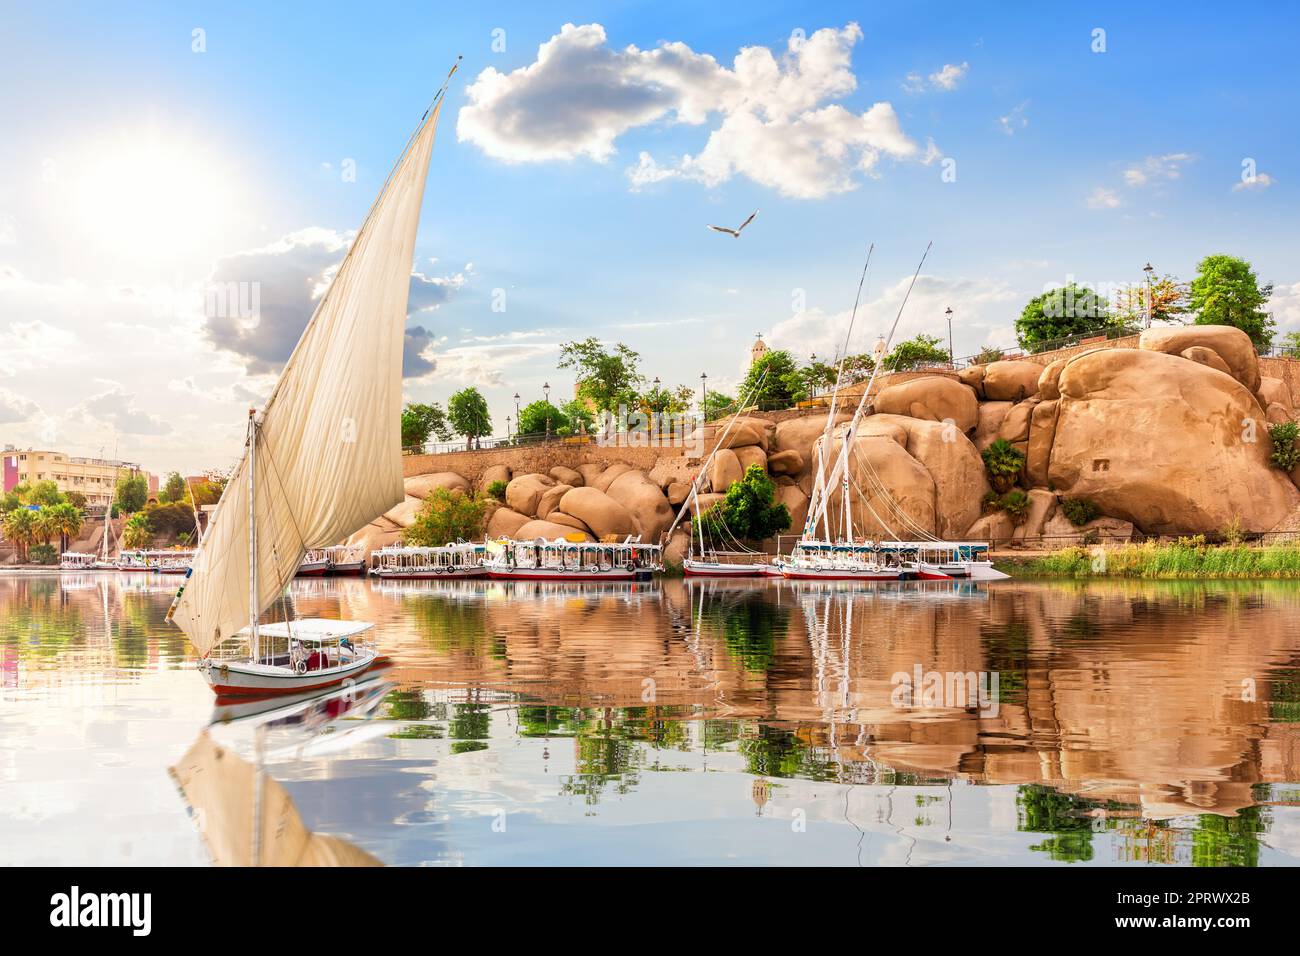 Le bateau navigue sur les rives pittoresques du Nil et les bâtiments traditionnels d'Assouan, en Égypte Banque D'Images